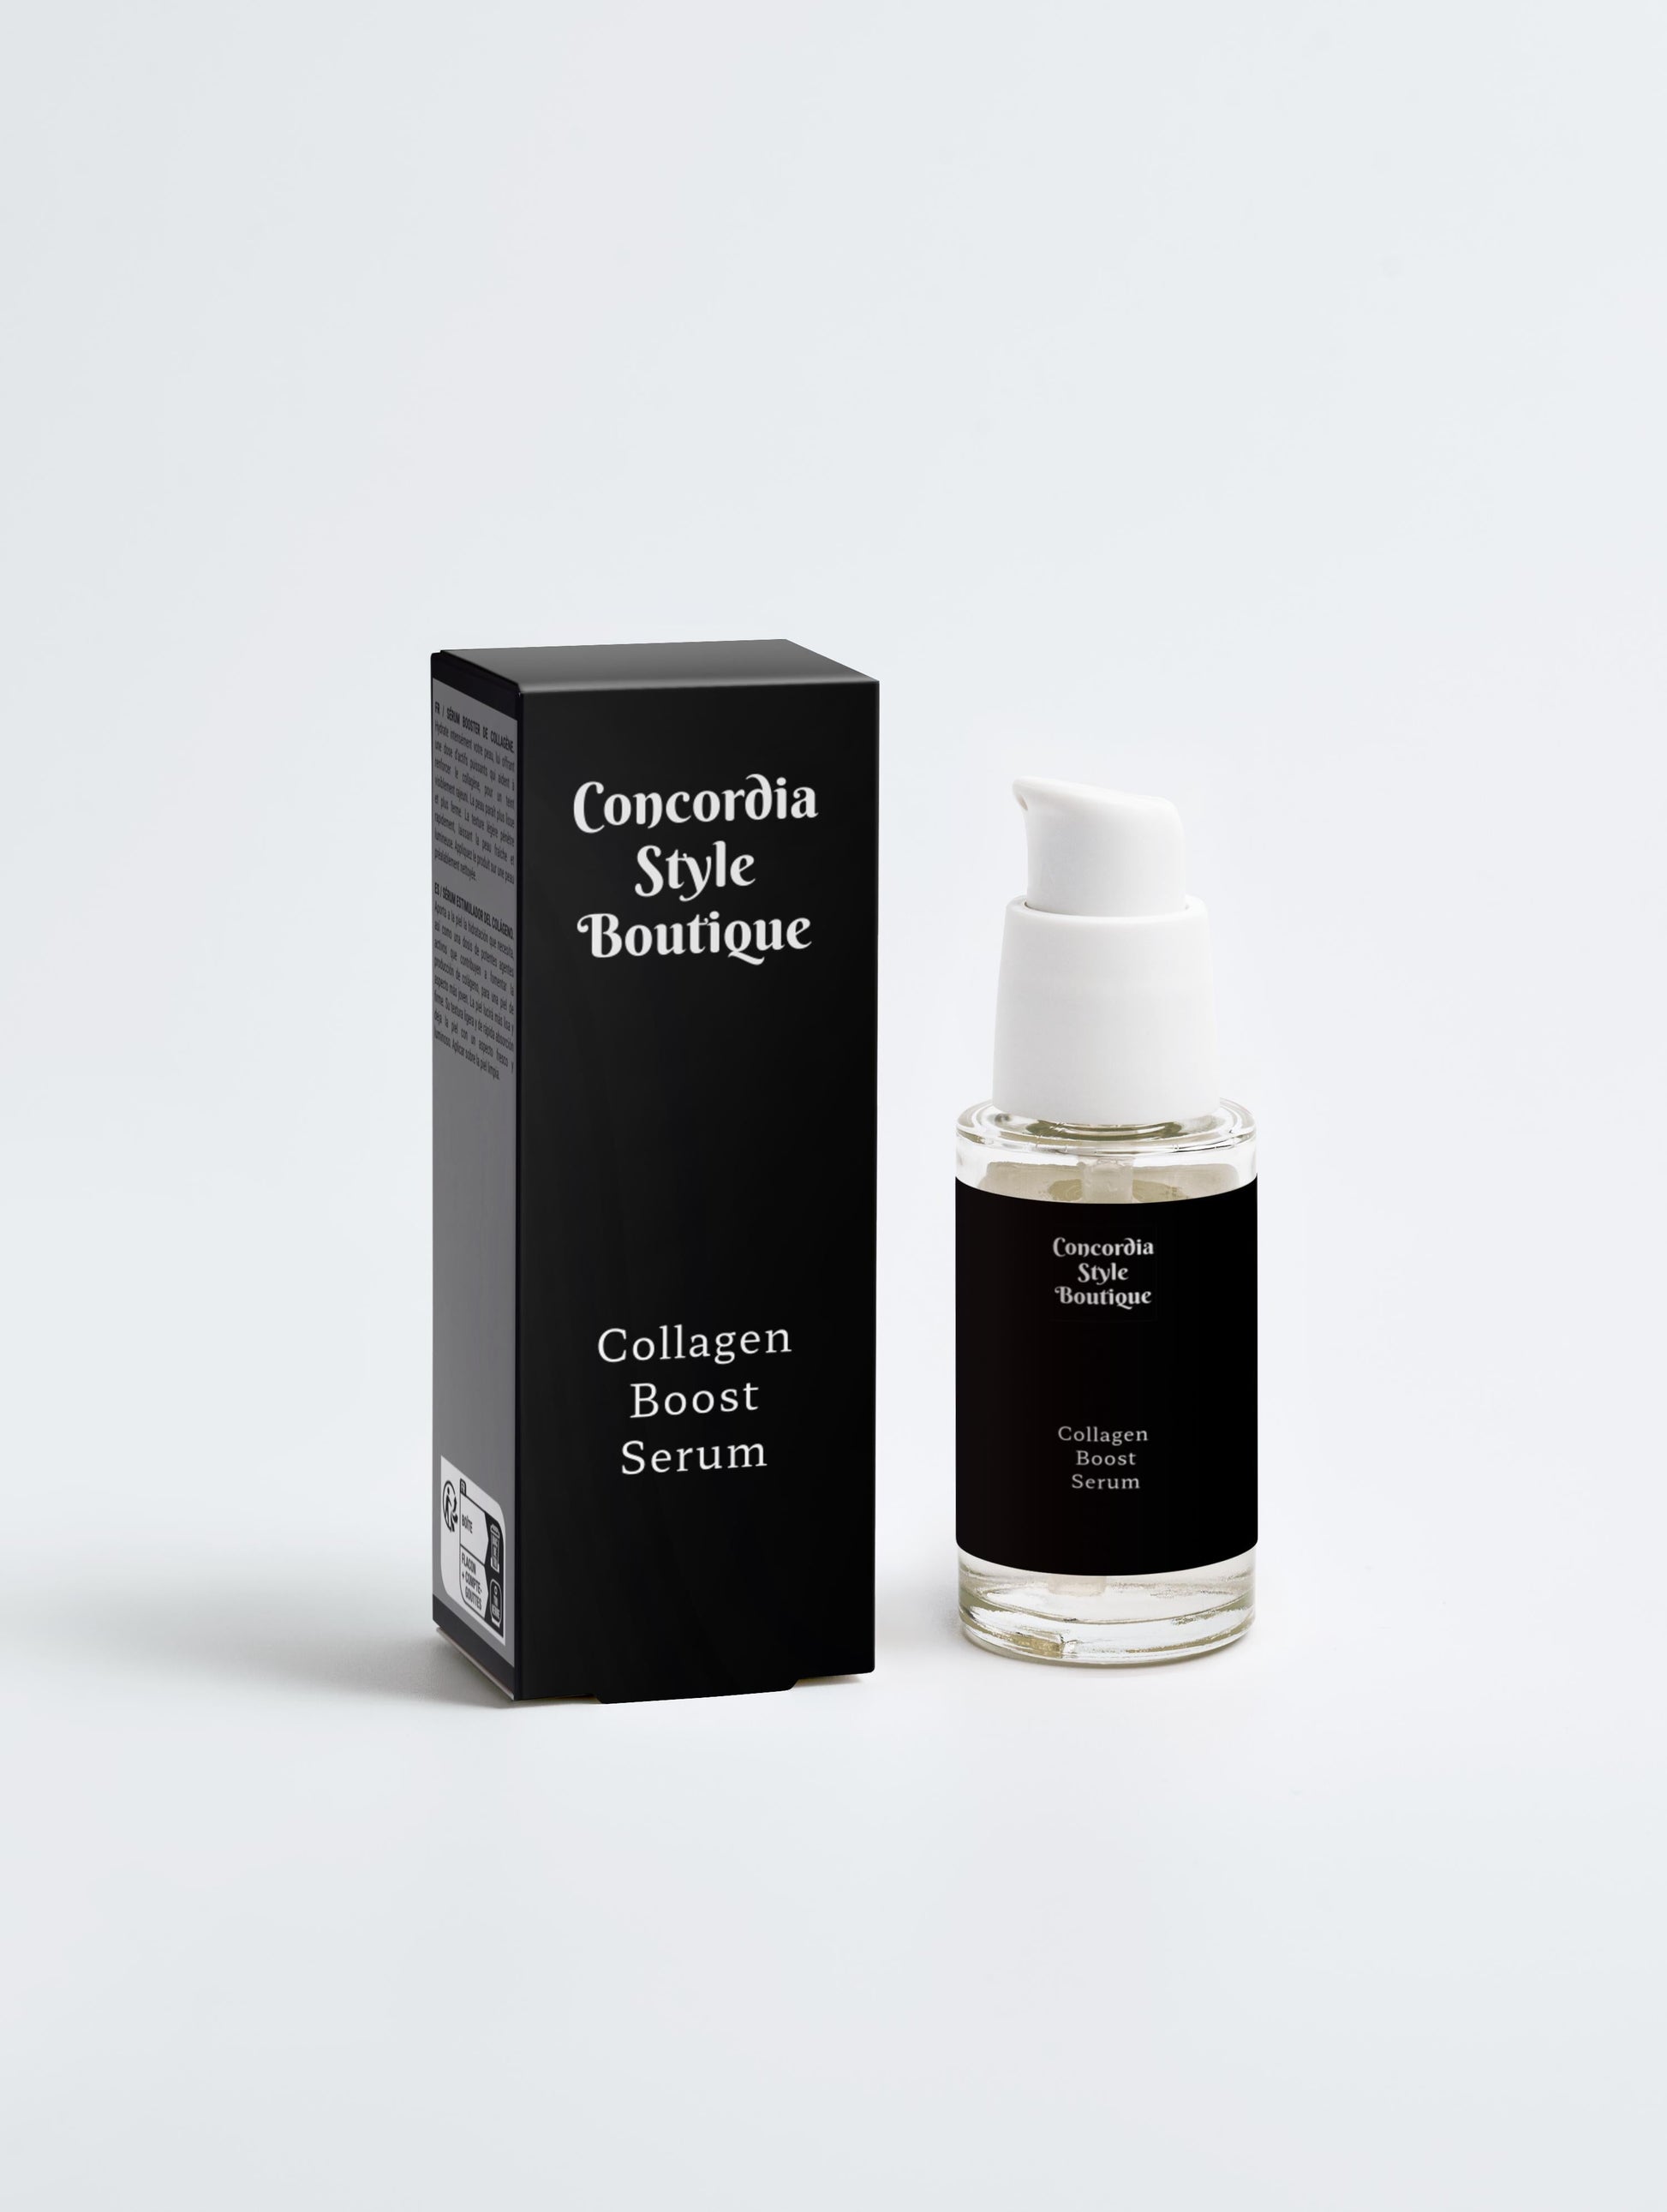 Collagen Boost Serum - Premium Collagen Boost Serum from Concordia Style Boutique - Just $24! Shop now at Concordia Style Boutique